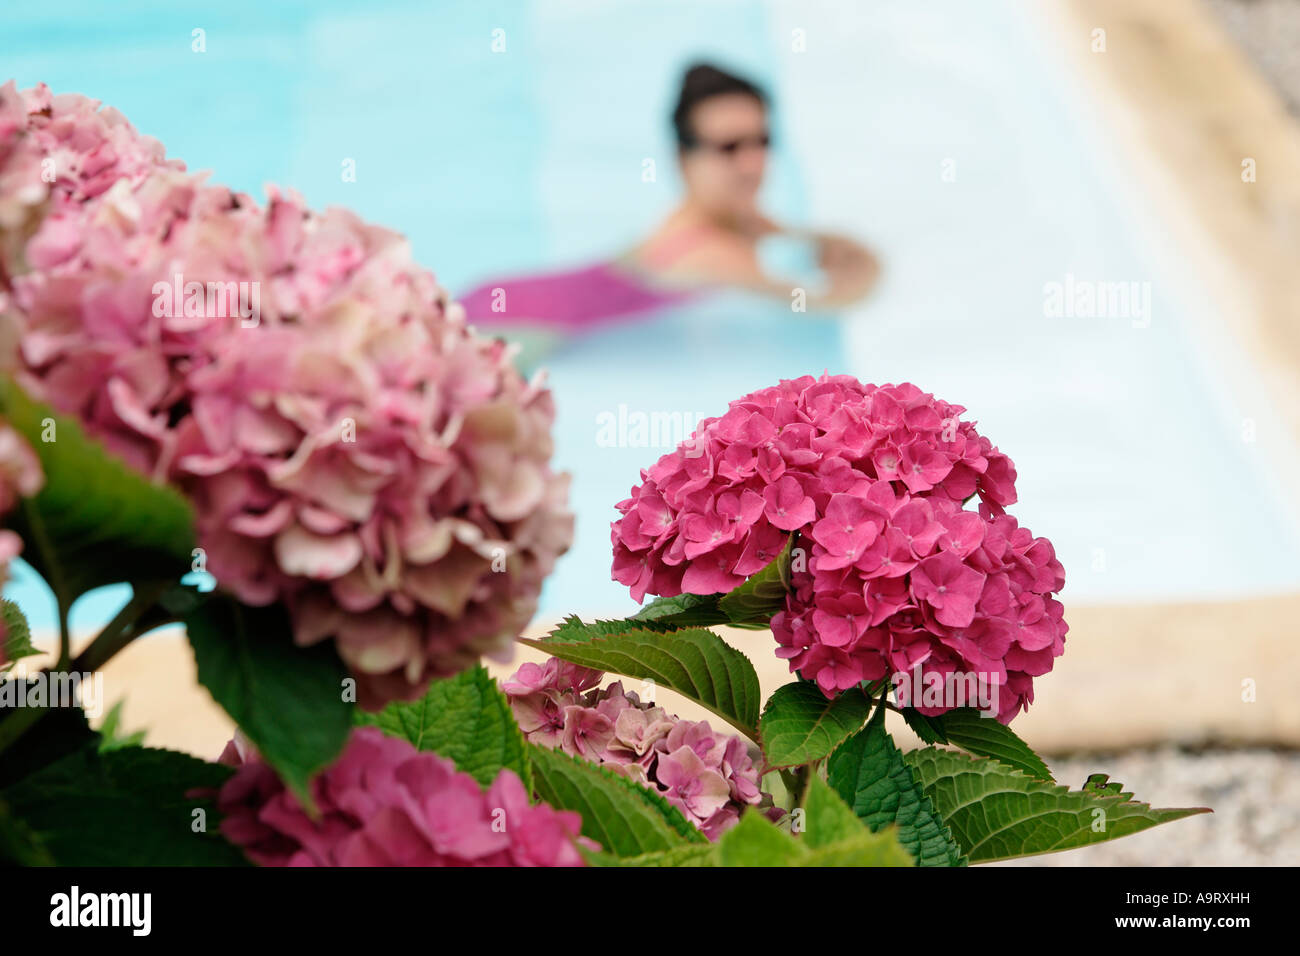 Woman in swimming pool Stock Photo